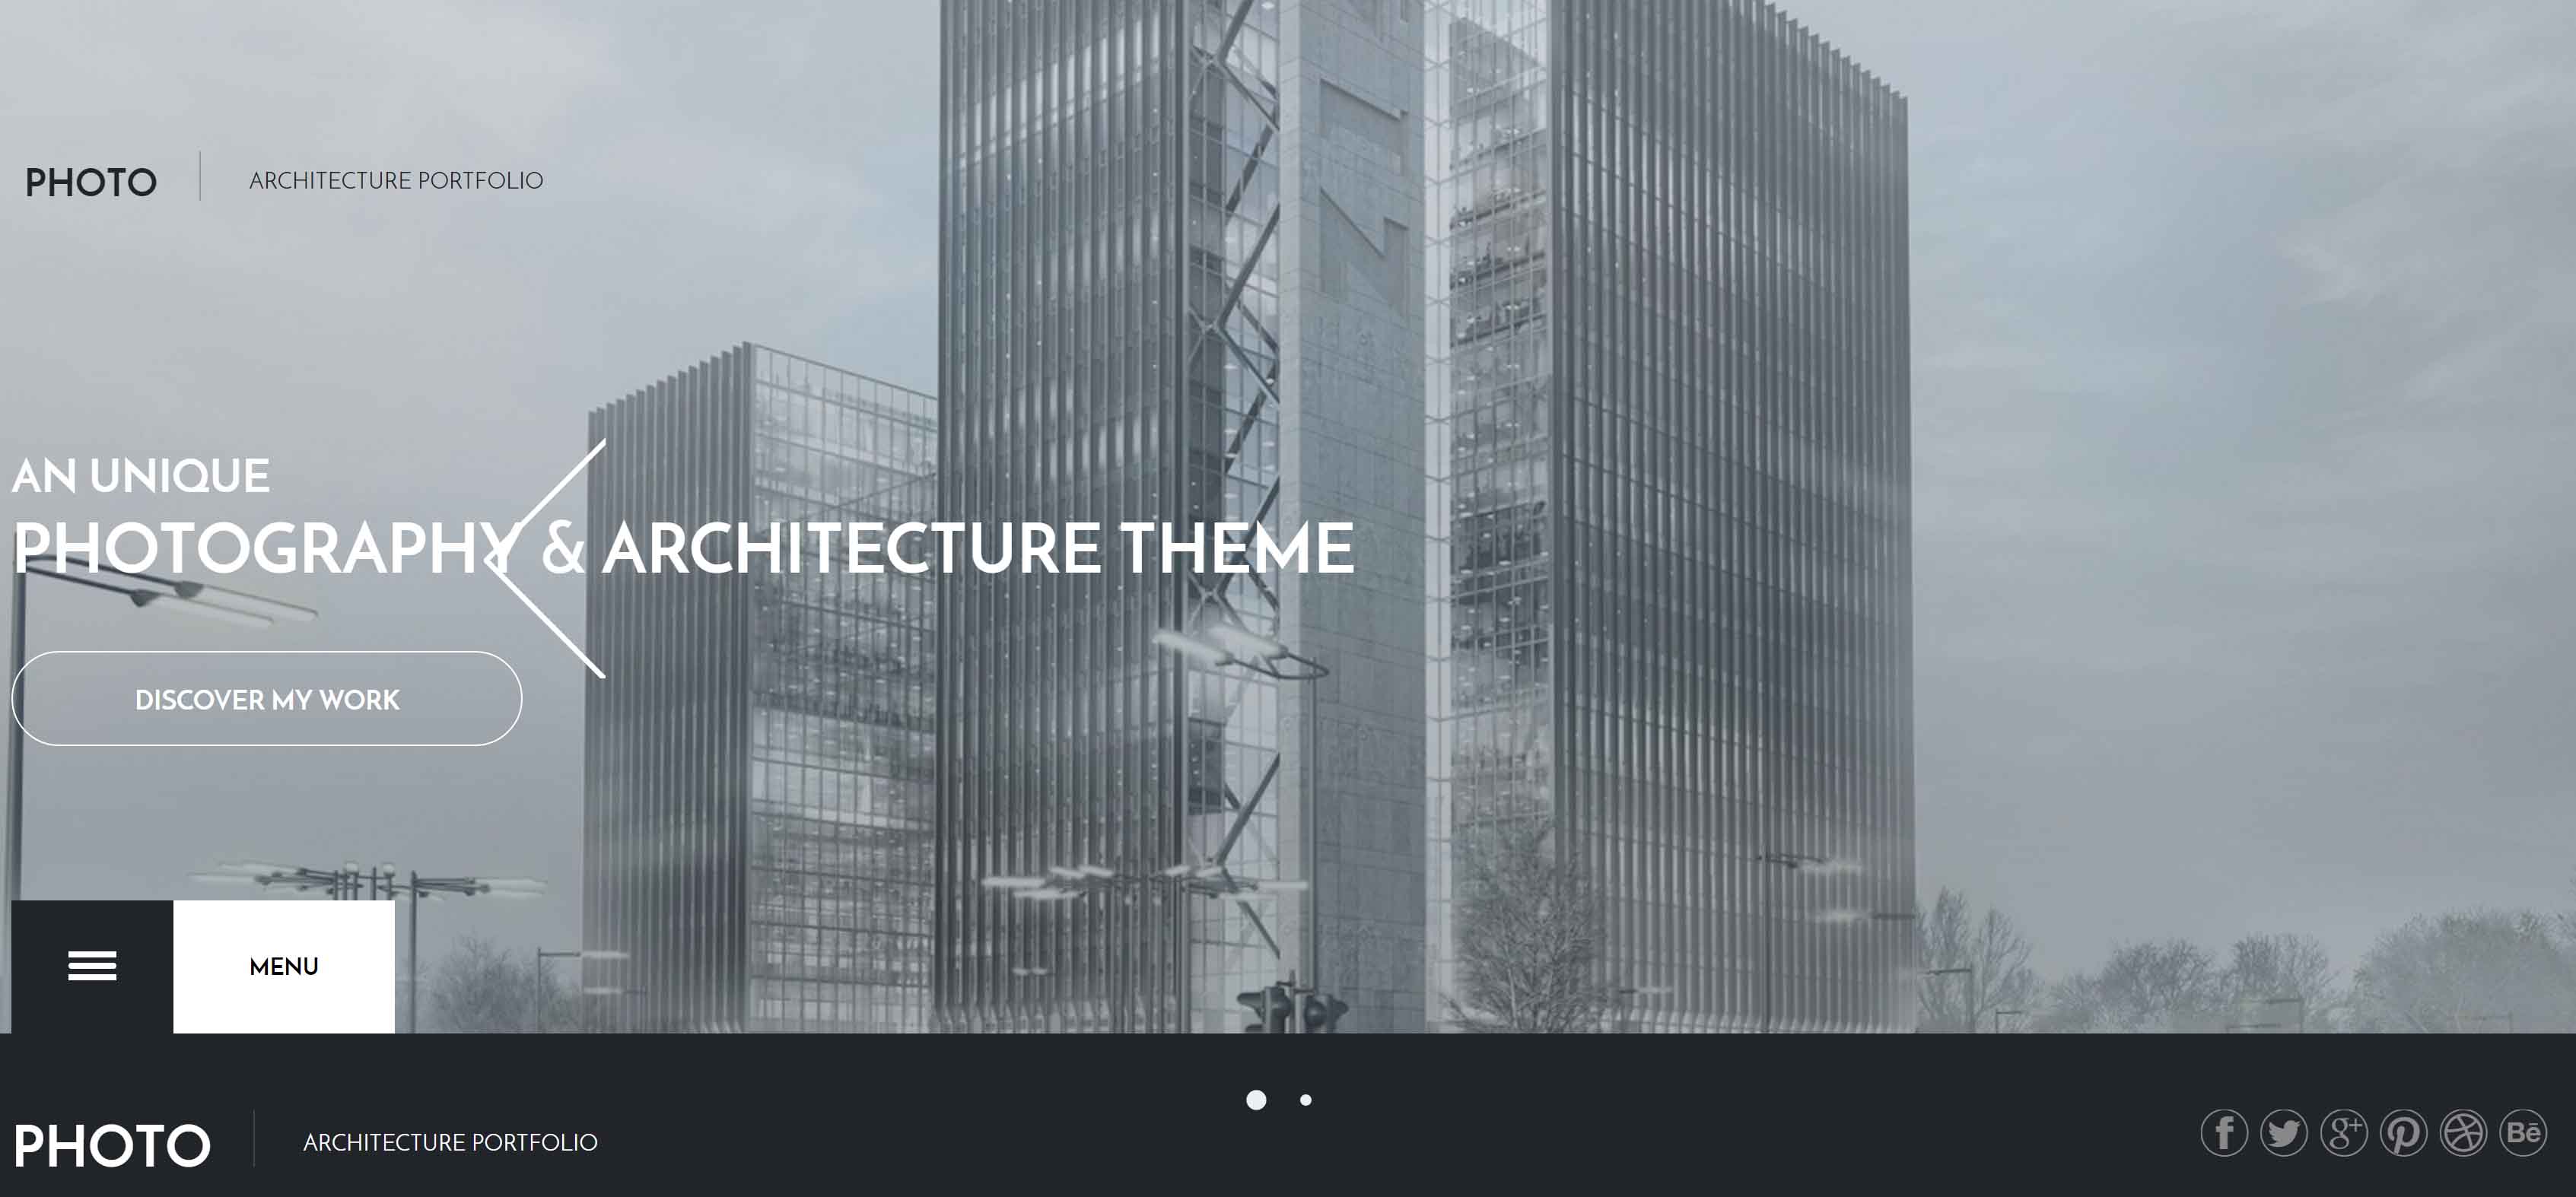 design for architecture studio